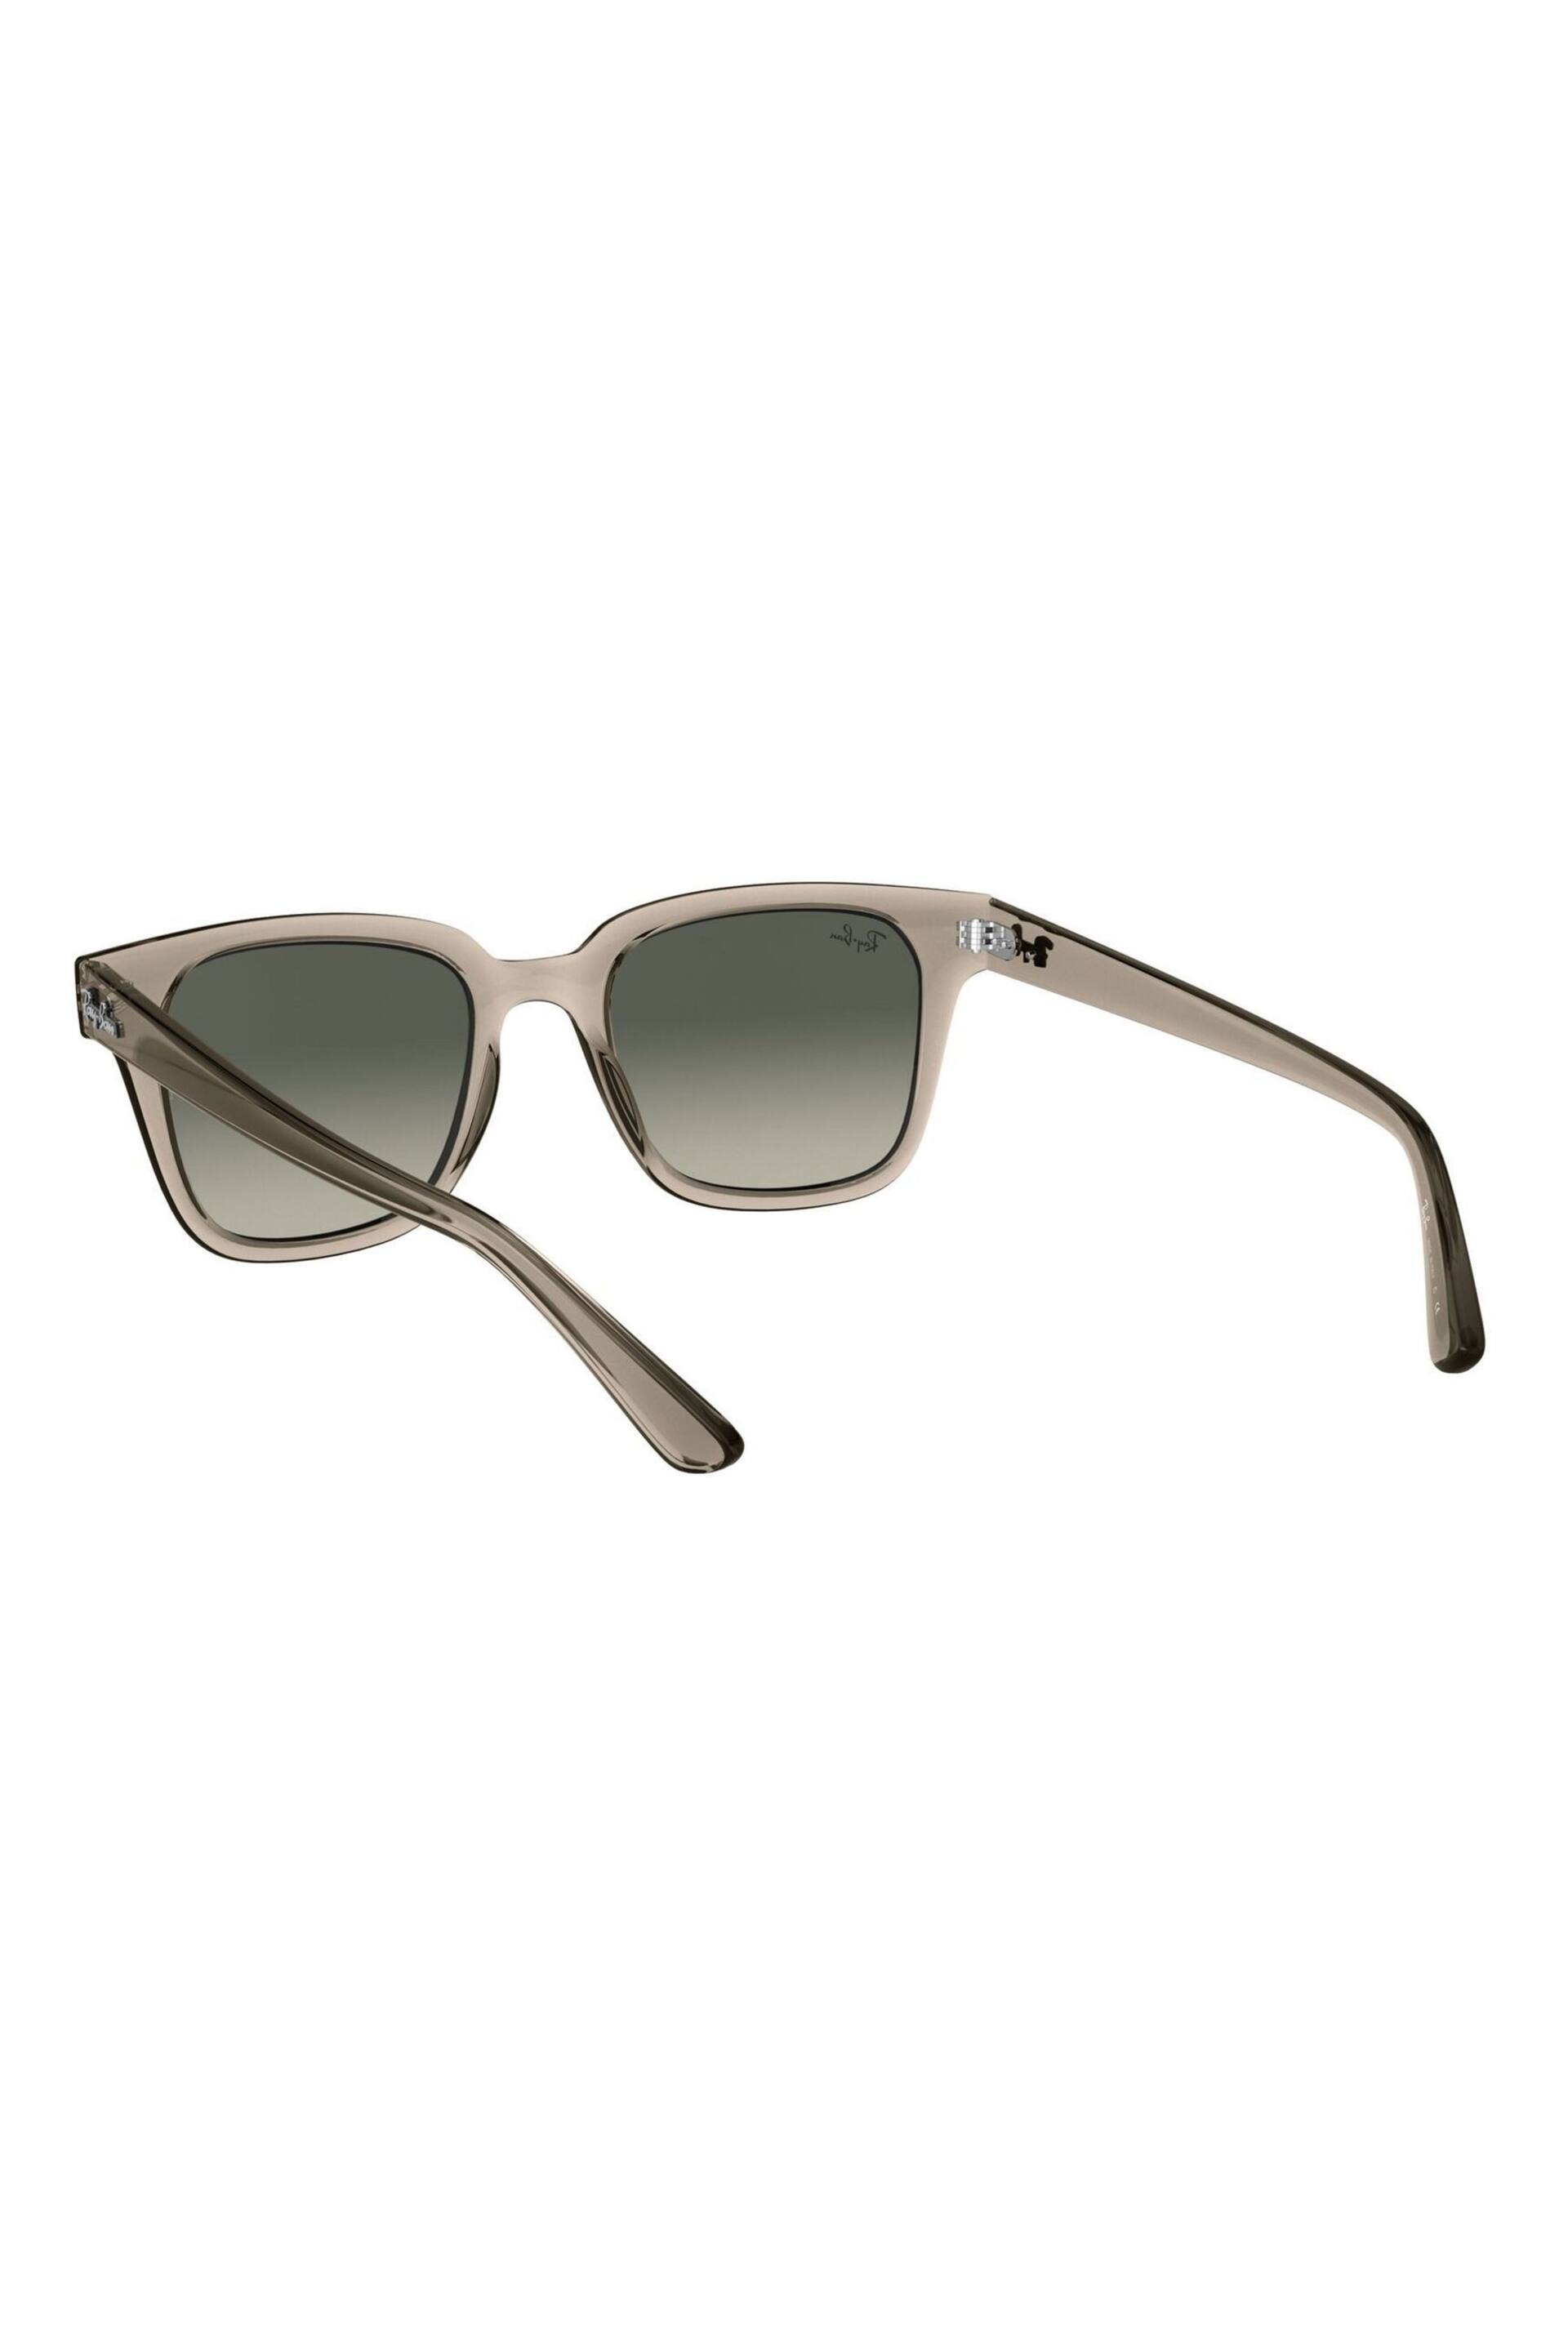 Ray-Ban RB4323 Wayfarer Sunglasses - Image 5 of 11